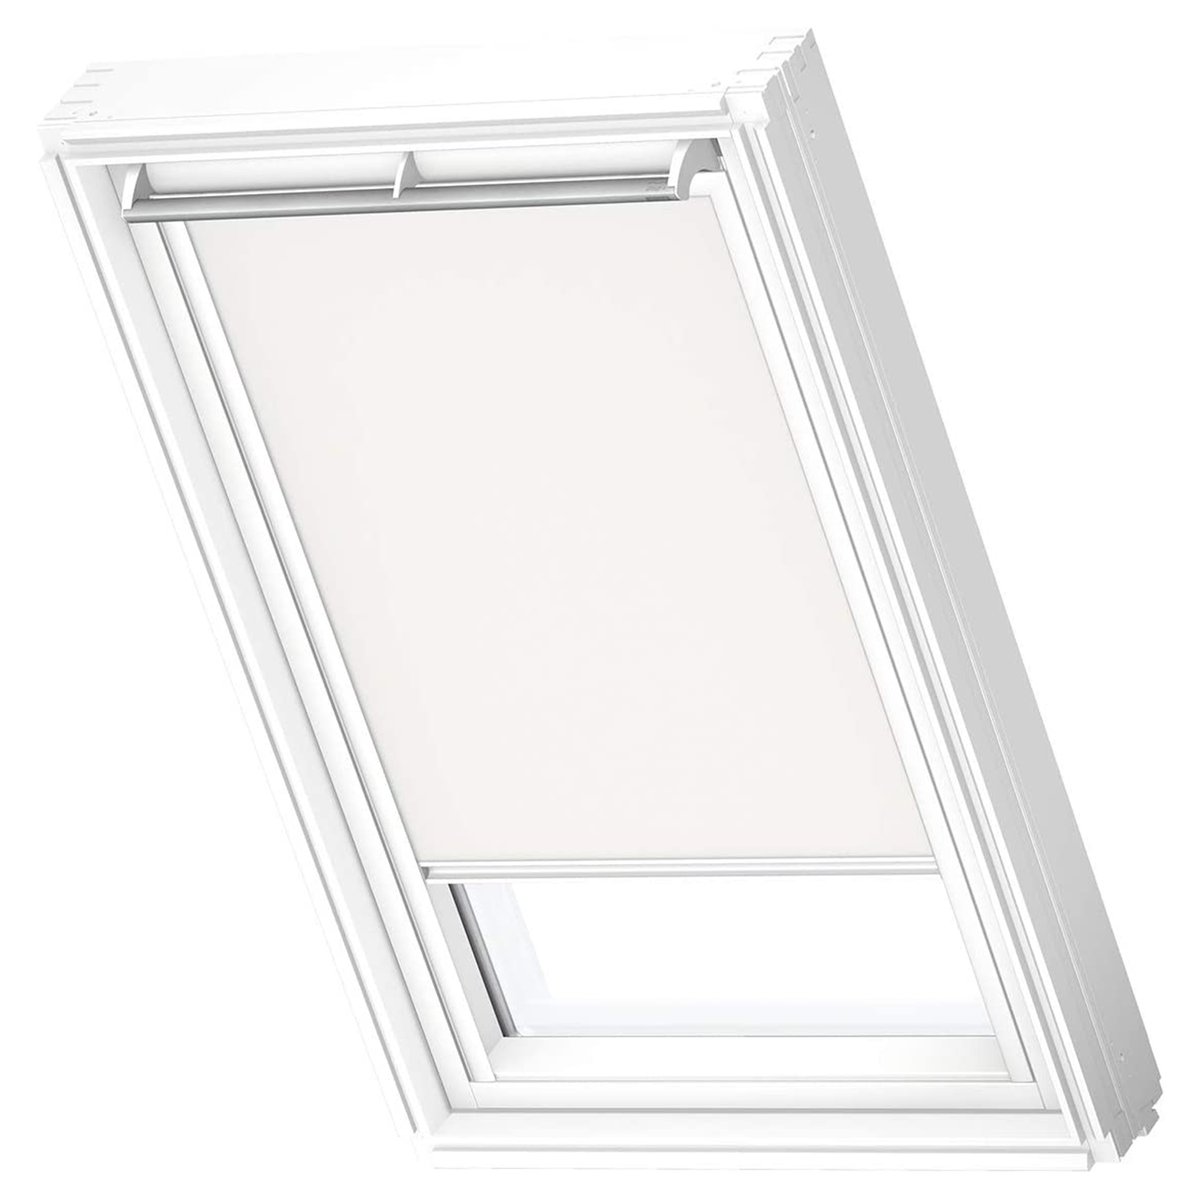 VELUX Sichtschutzrollo DKL SK06 1025SWL Weiß Verdunkelungsrollo für  Dachfenster 114x118cm weiß | Haus und Garten \\ Innenräume \\  Fensterabdeckung \\ Sichtschutzrollo Fensterabdeckung |